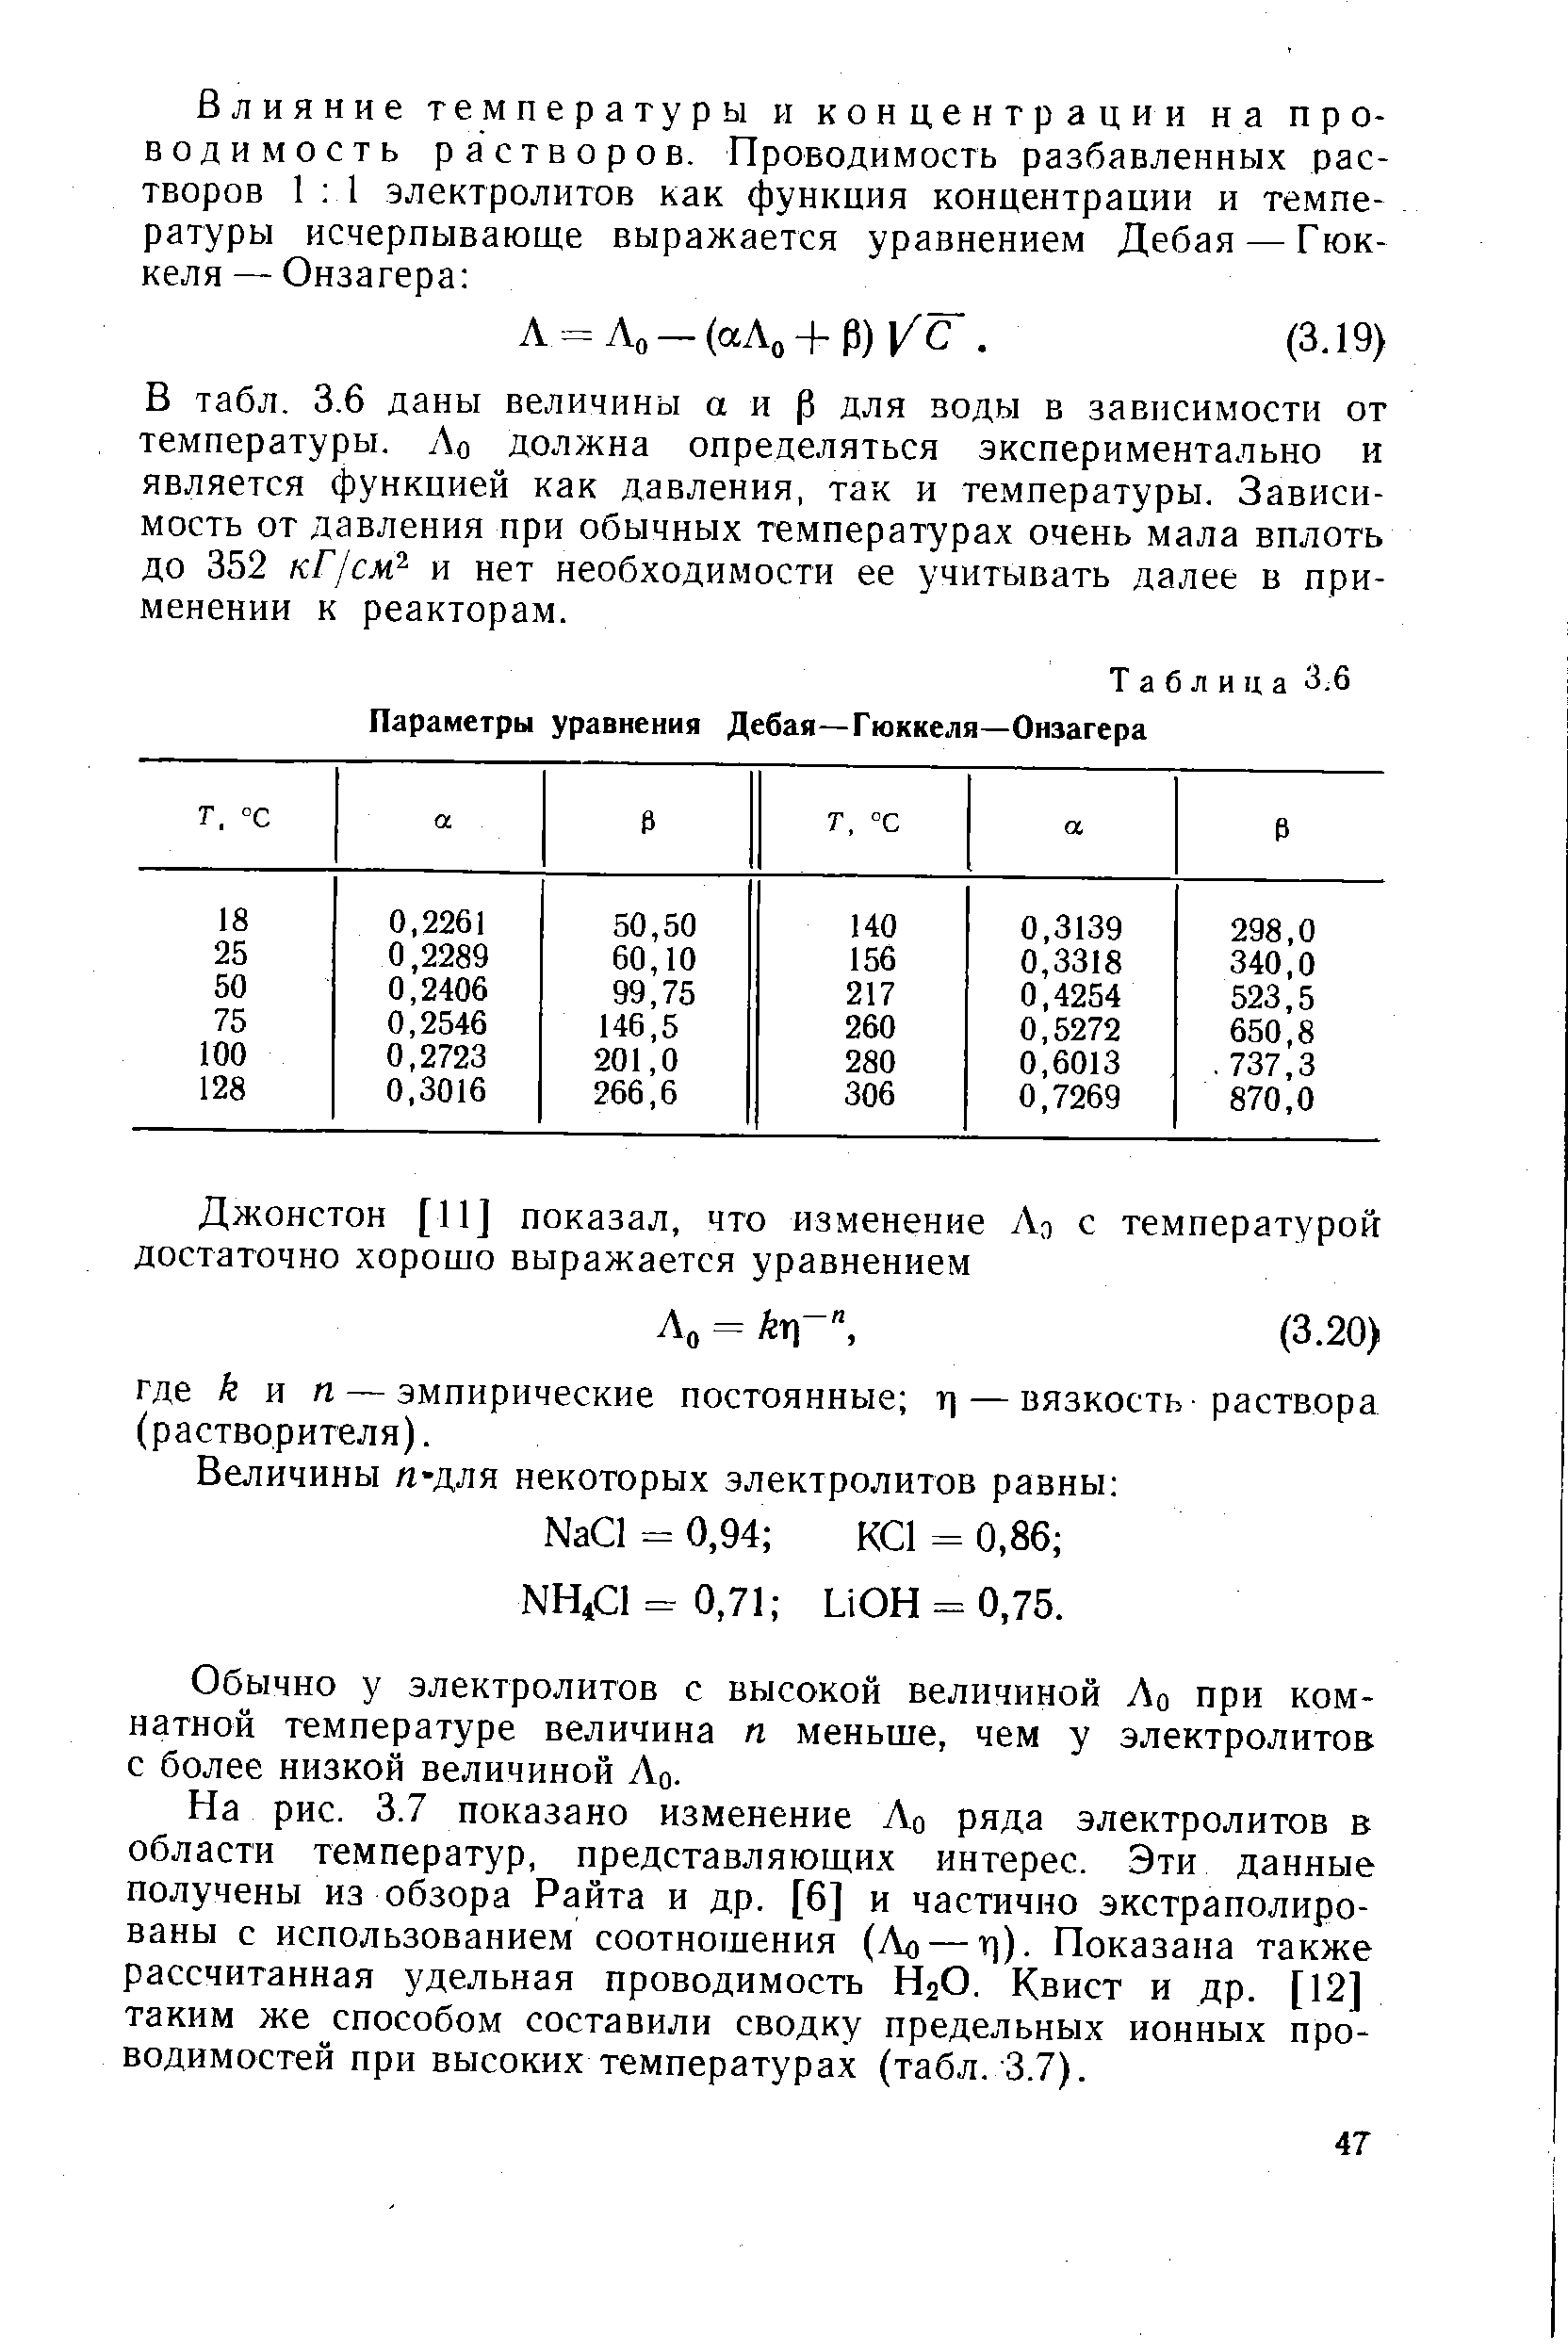 Таблица 3.6 Параметры уравнения Дебая—Гюккеля—Онзагера
